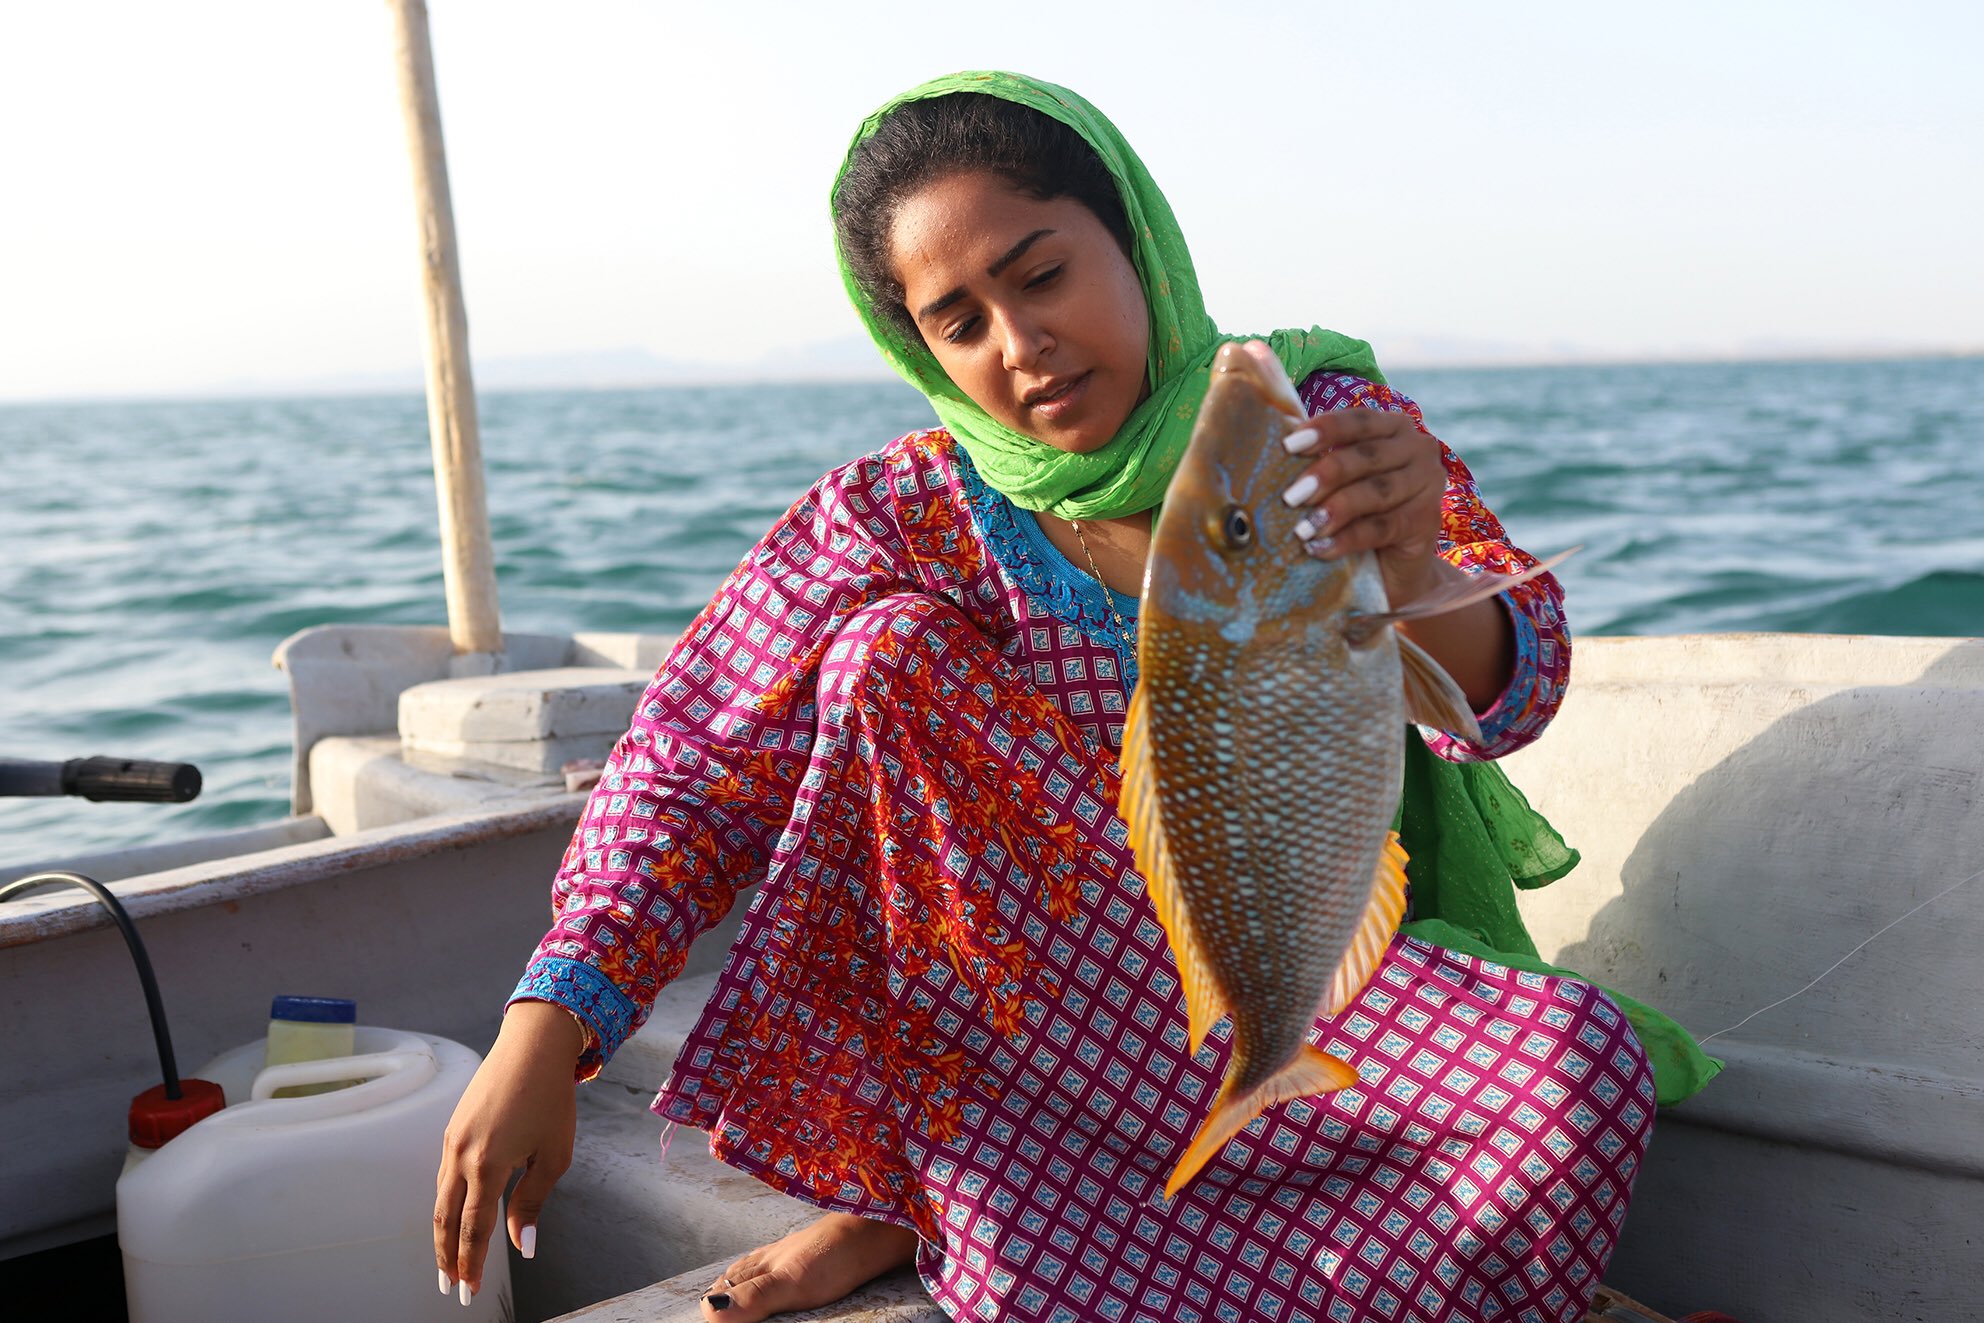 11Hengam island women fishing bandari life